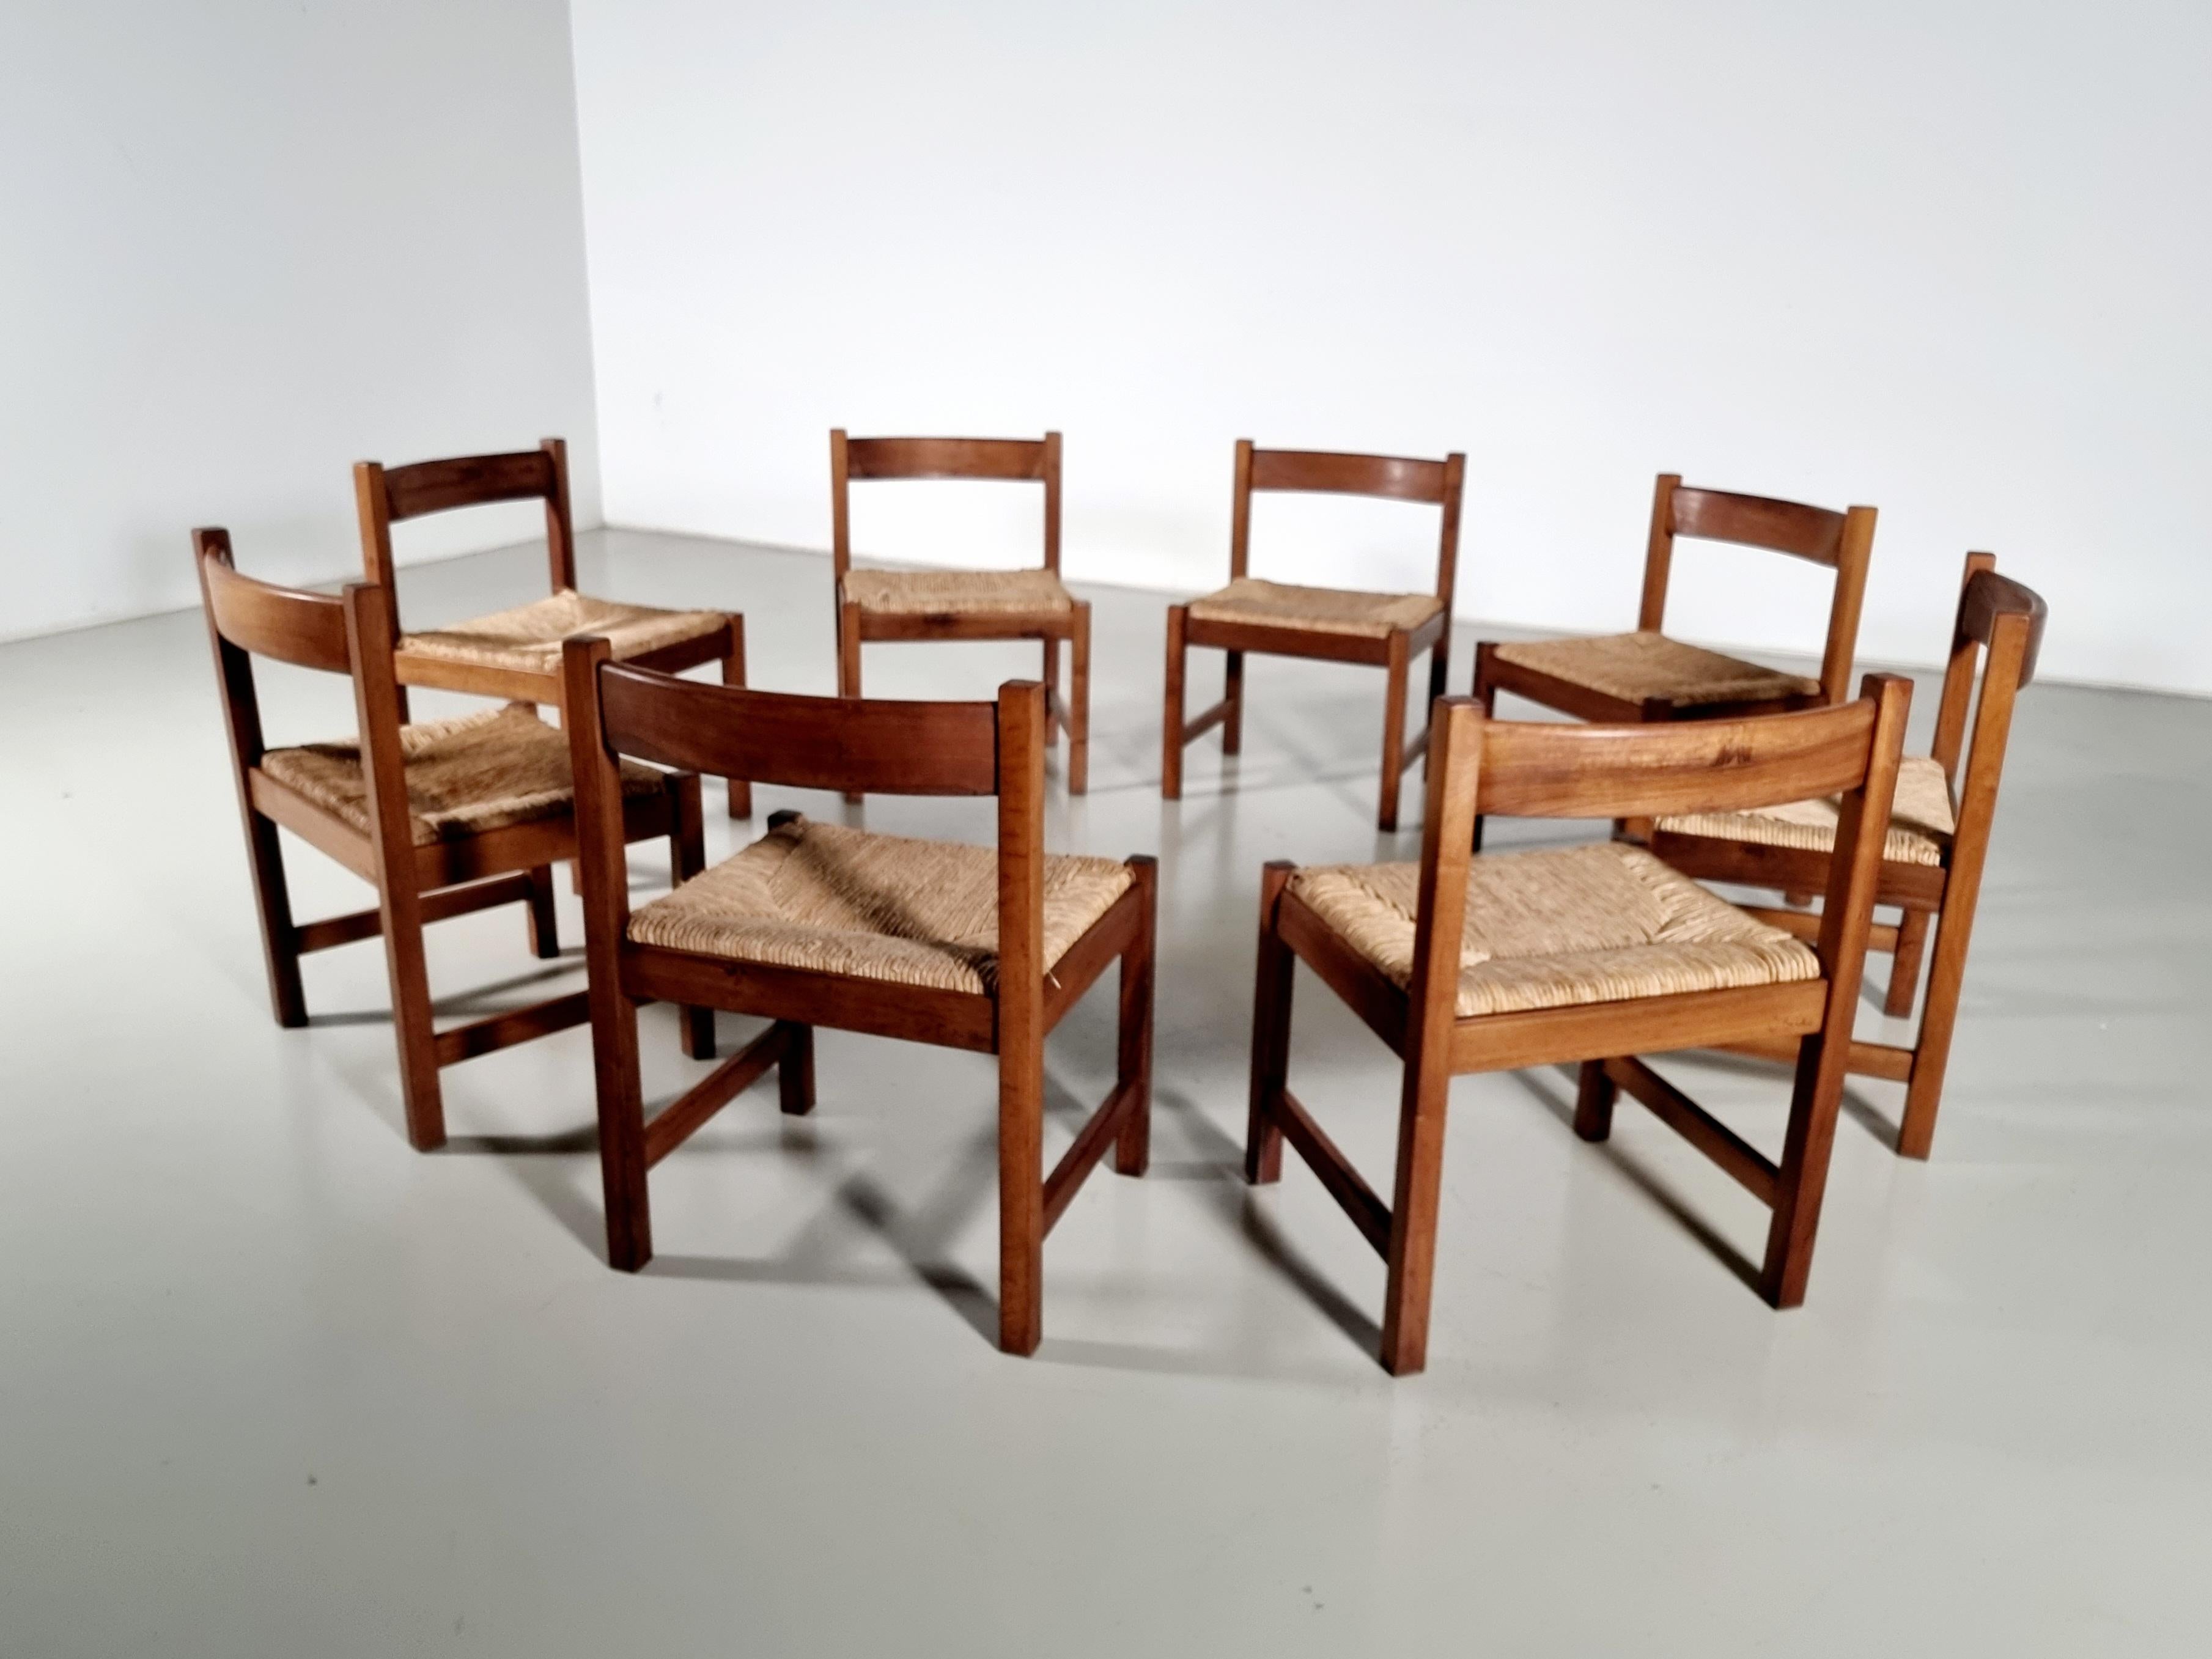 Torbecchia Chairs in walnut and rush, Giovanni Michelucci for Poltronova, 1960s For Sale 2